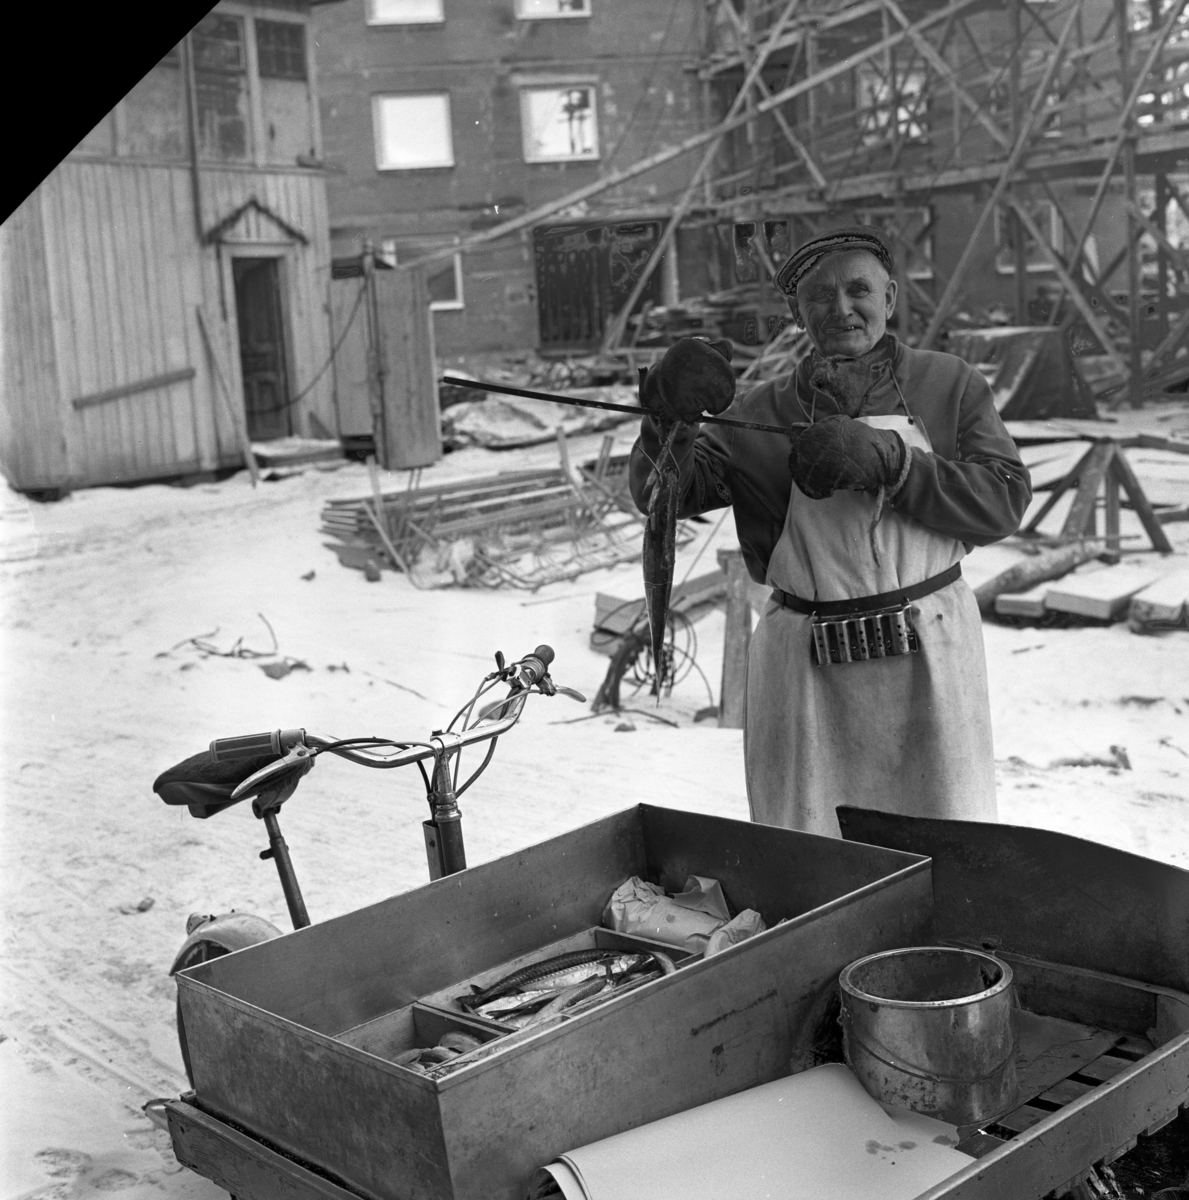 Fiskhandlare Algot Frisk åkte runt i Huskvarna och sålde fisk från sin flakmoped. Här väger han upp en fisk med sin handvåg. Runt midjan har han sin kassaapparat .Bild från 1962.